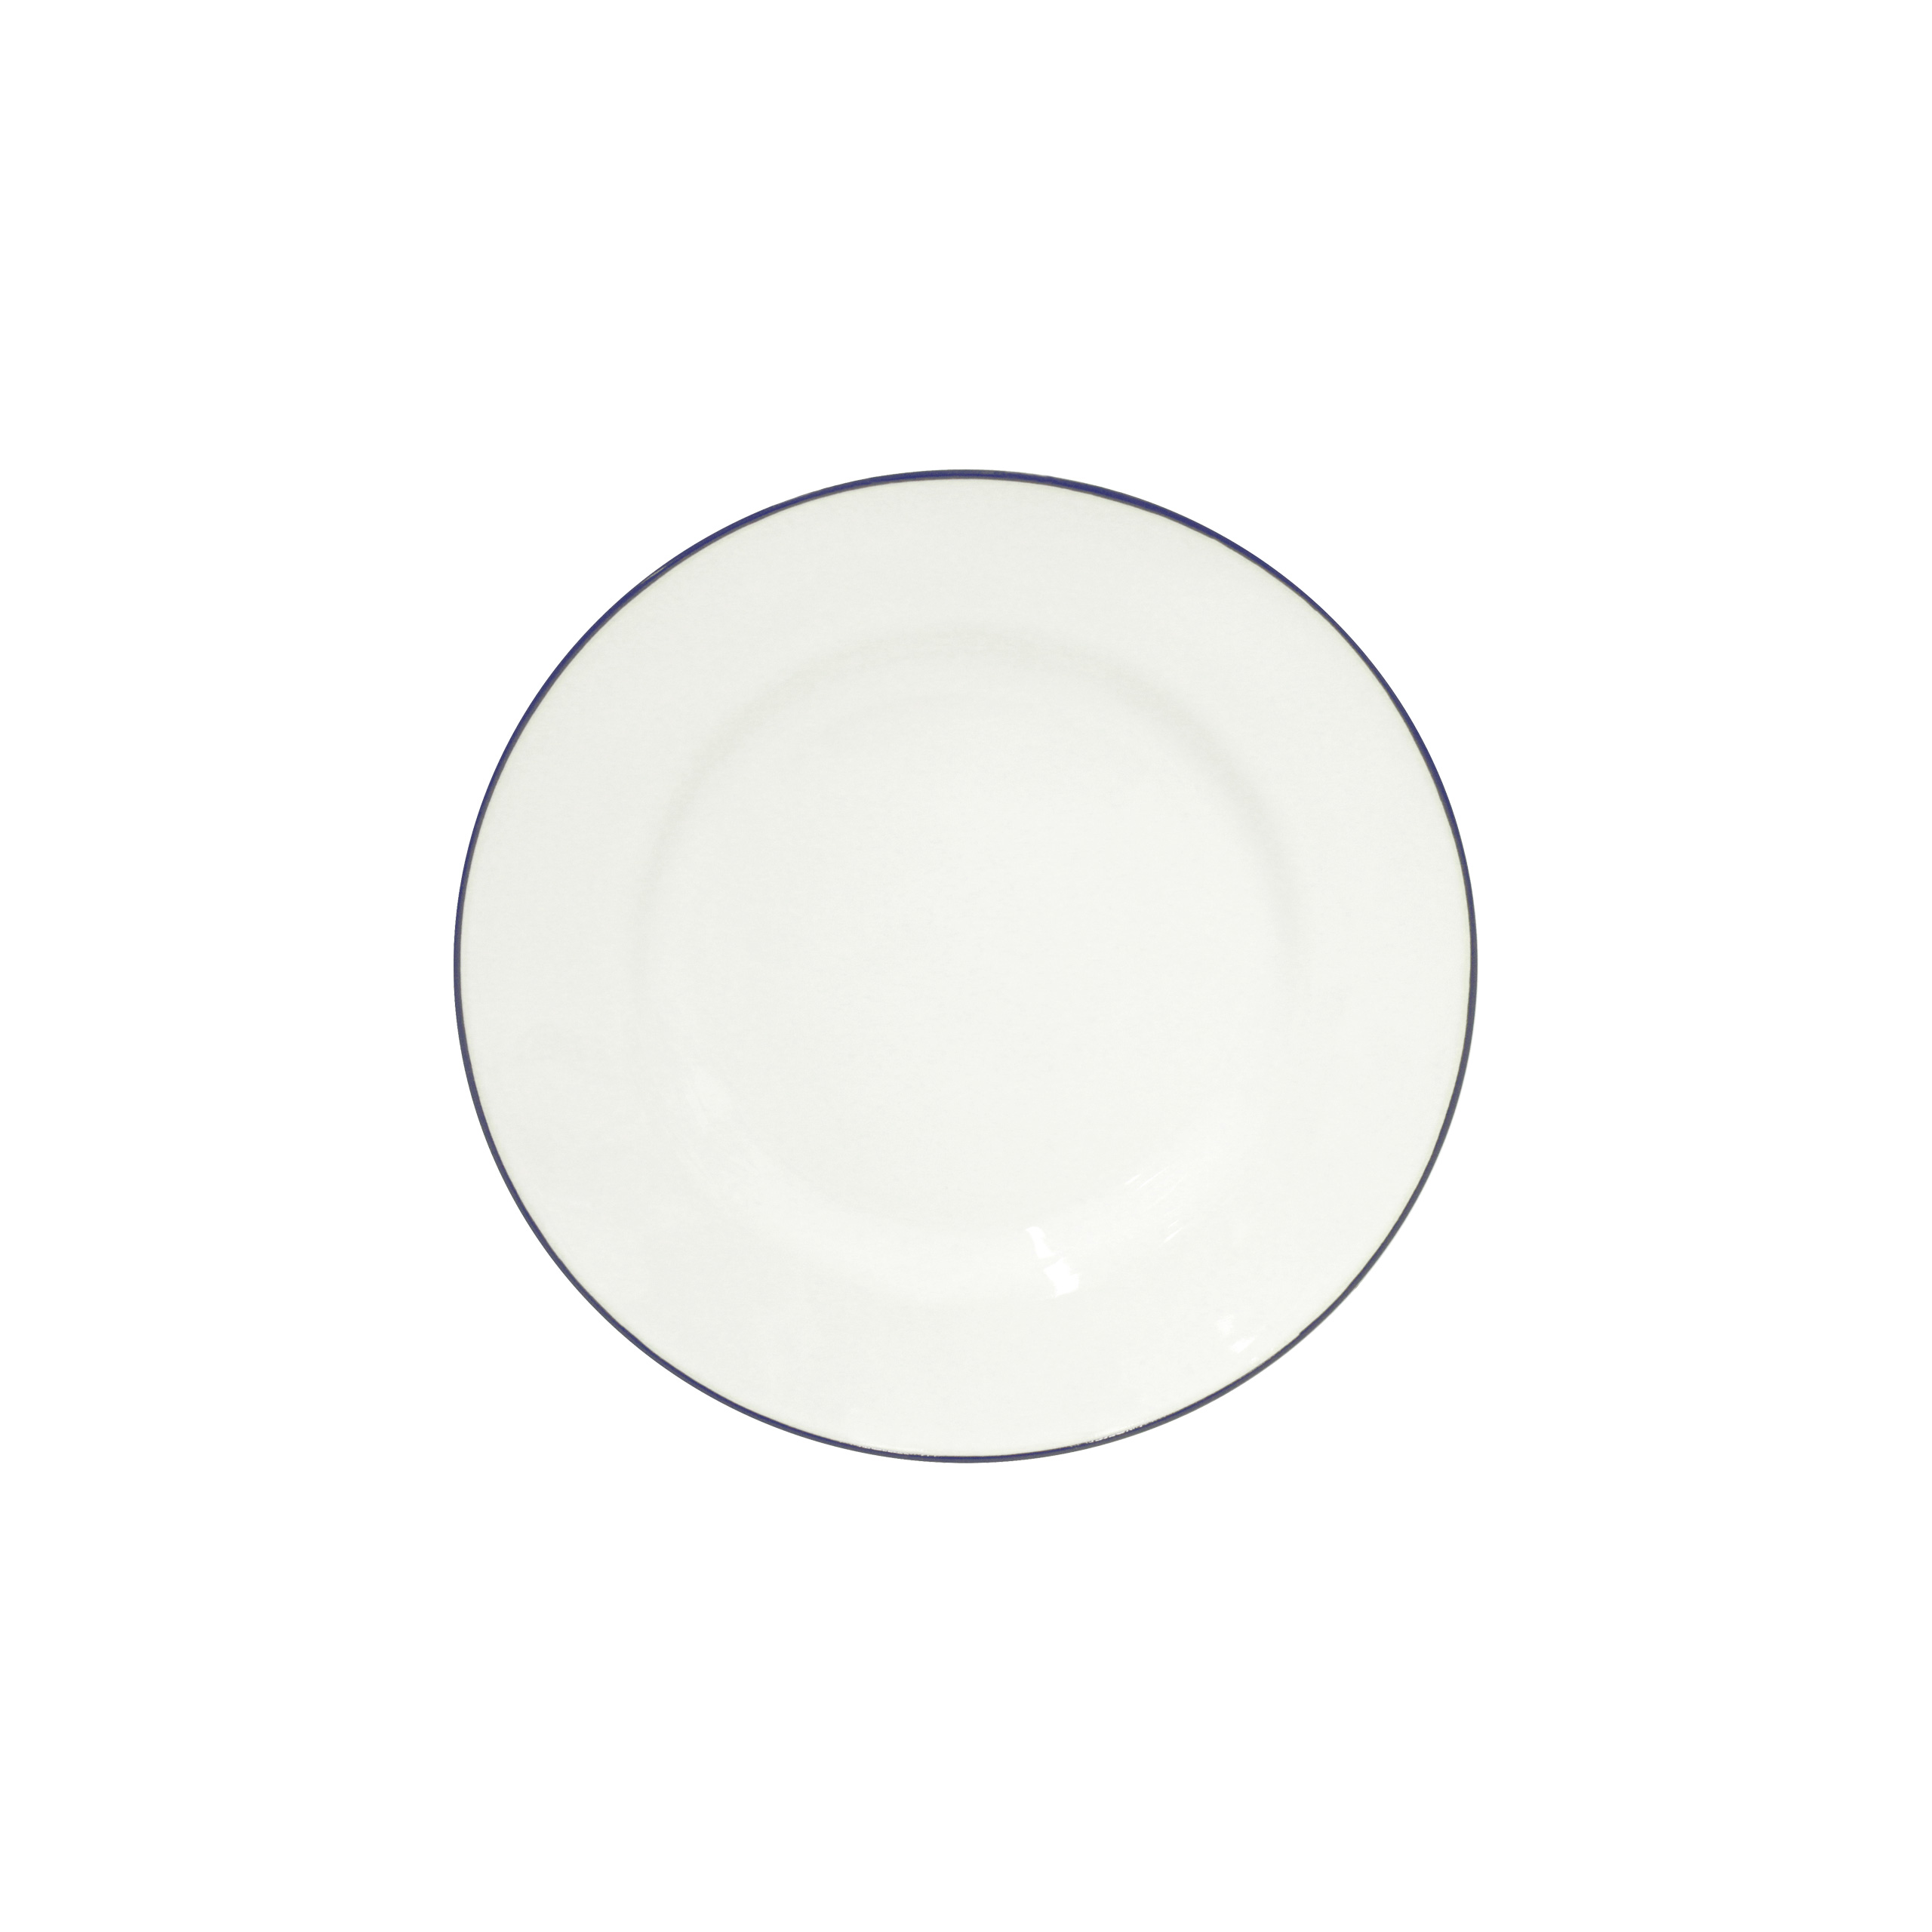 Beja White/blue Salad Plate 23cm Gift